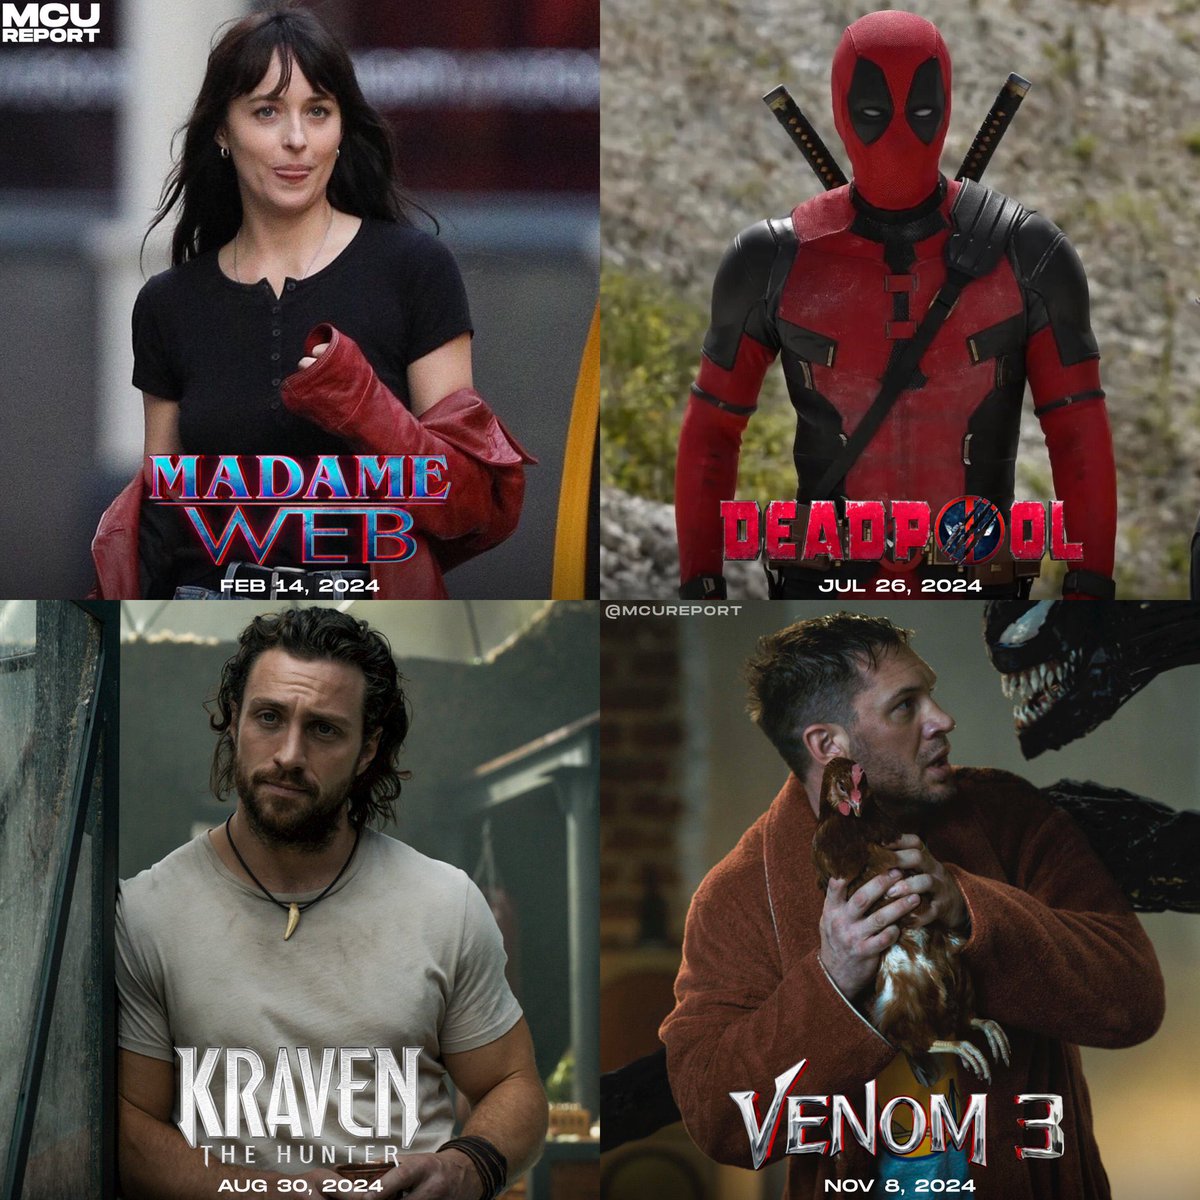 Las películas de personajes de #Marvel que se estrenarían en 2024:

• #MadameWeb — Feb 14, 2024
• #Deadpool3 — July 26, 2024
• #KravenTheHunter — Aug 30, 2024
• #Venom3 — Nov 8, 2024